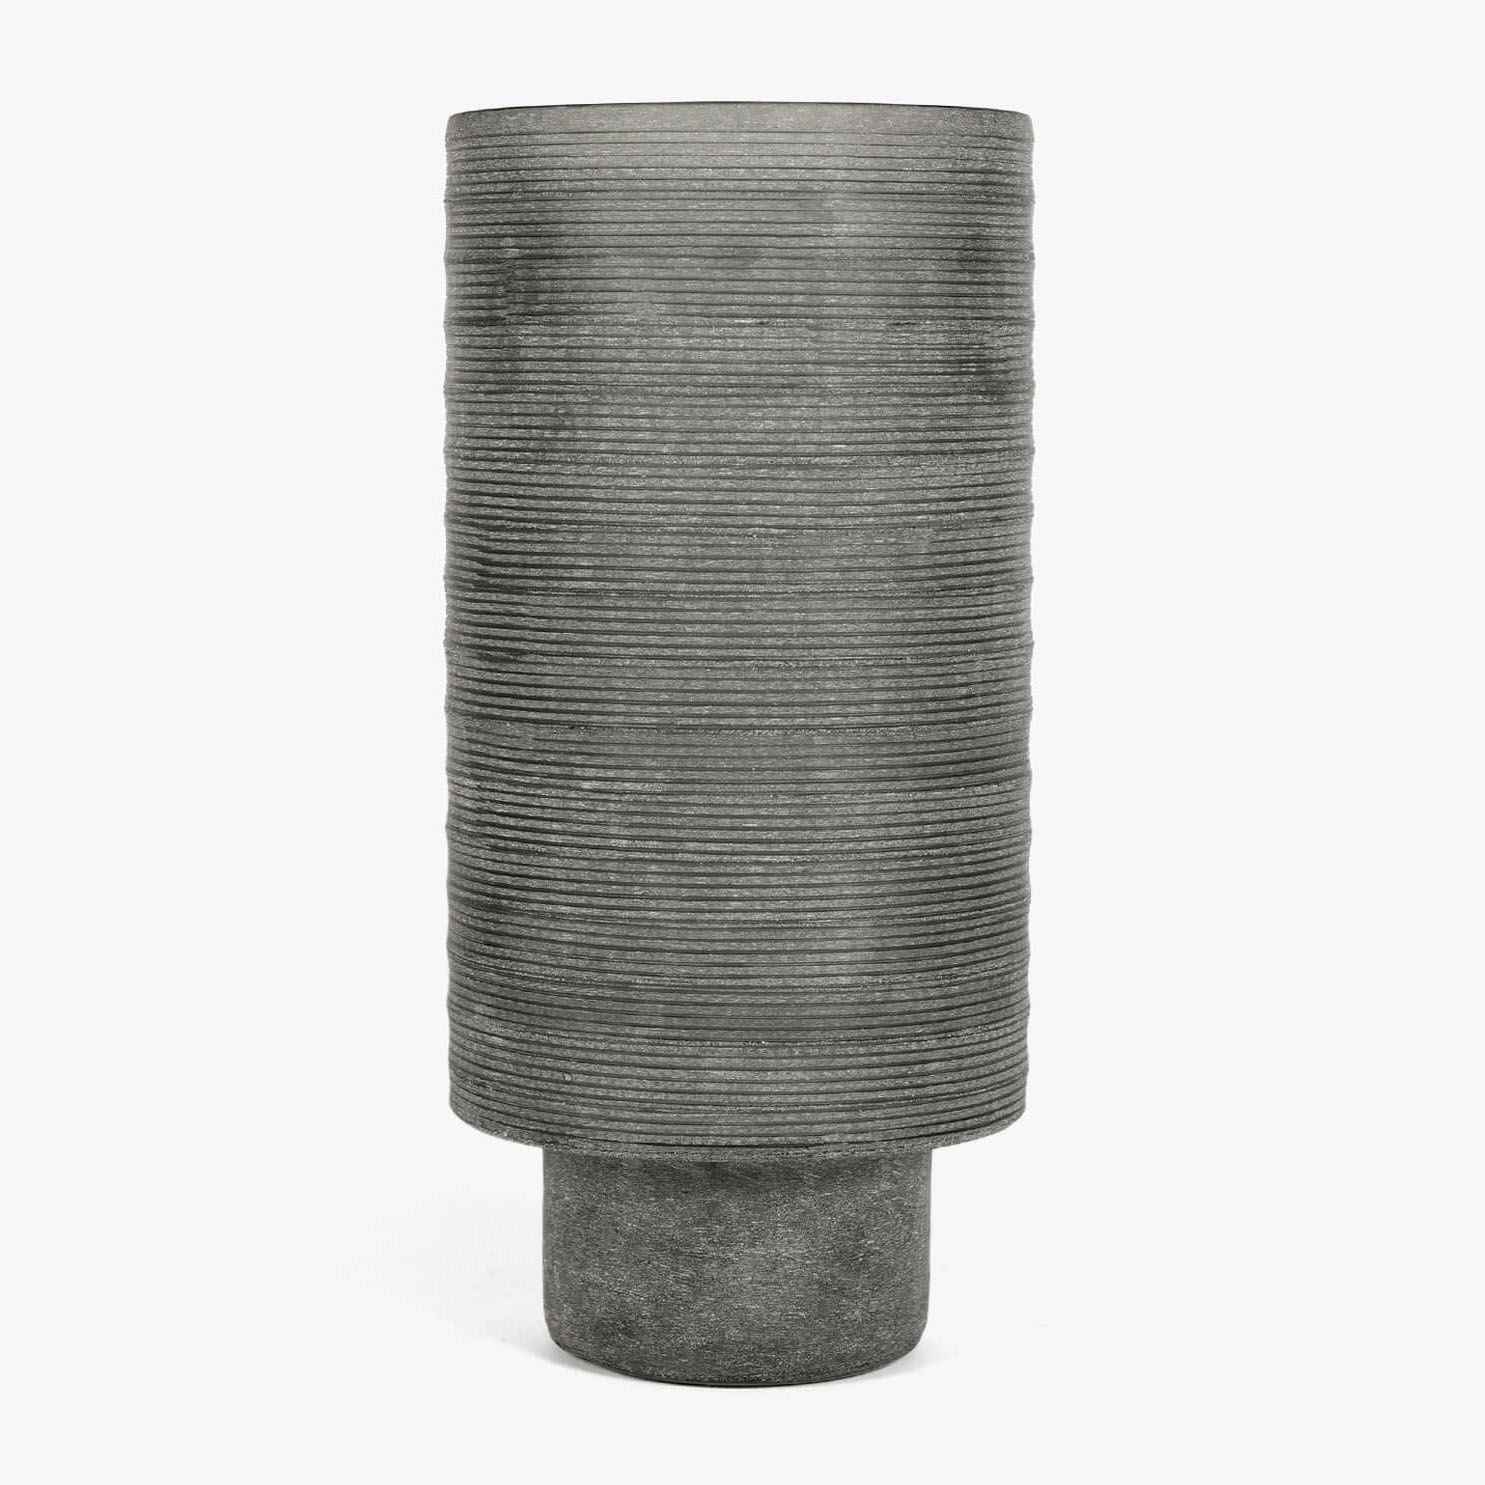 ZY-Vase-A-gray